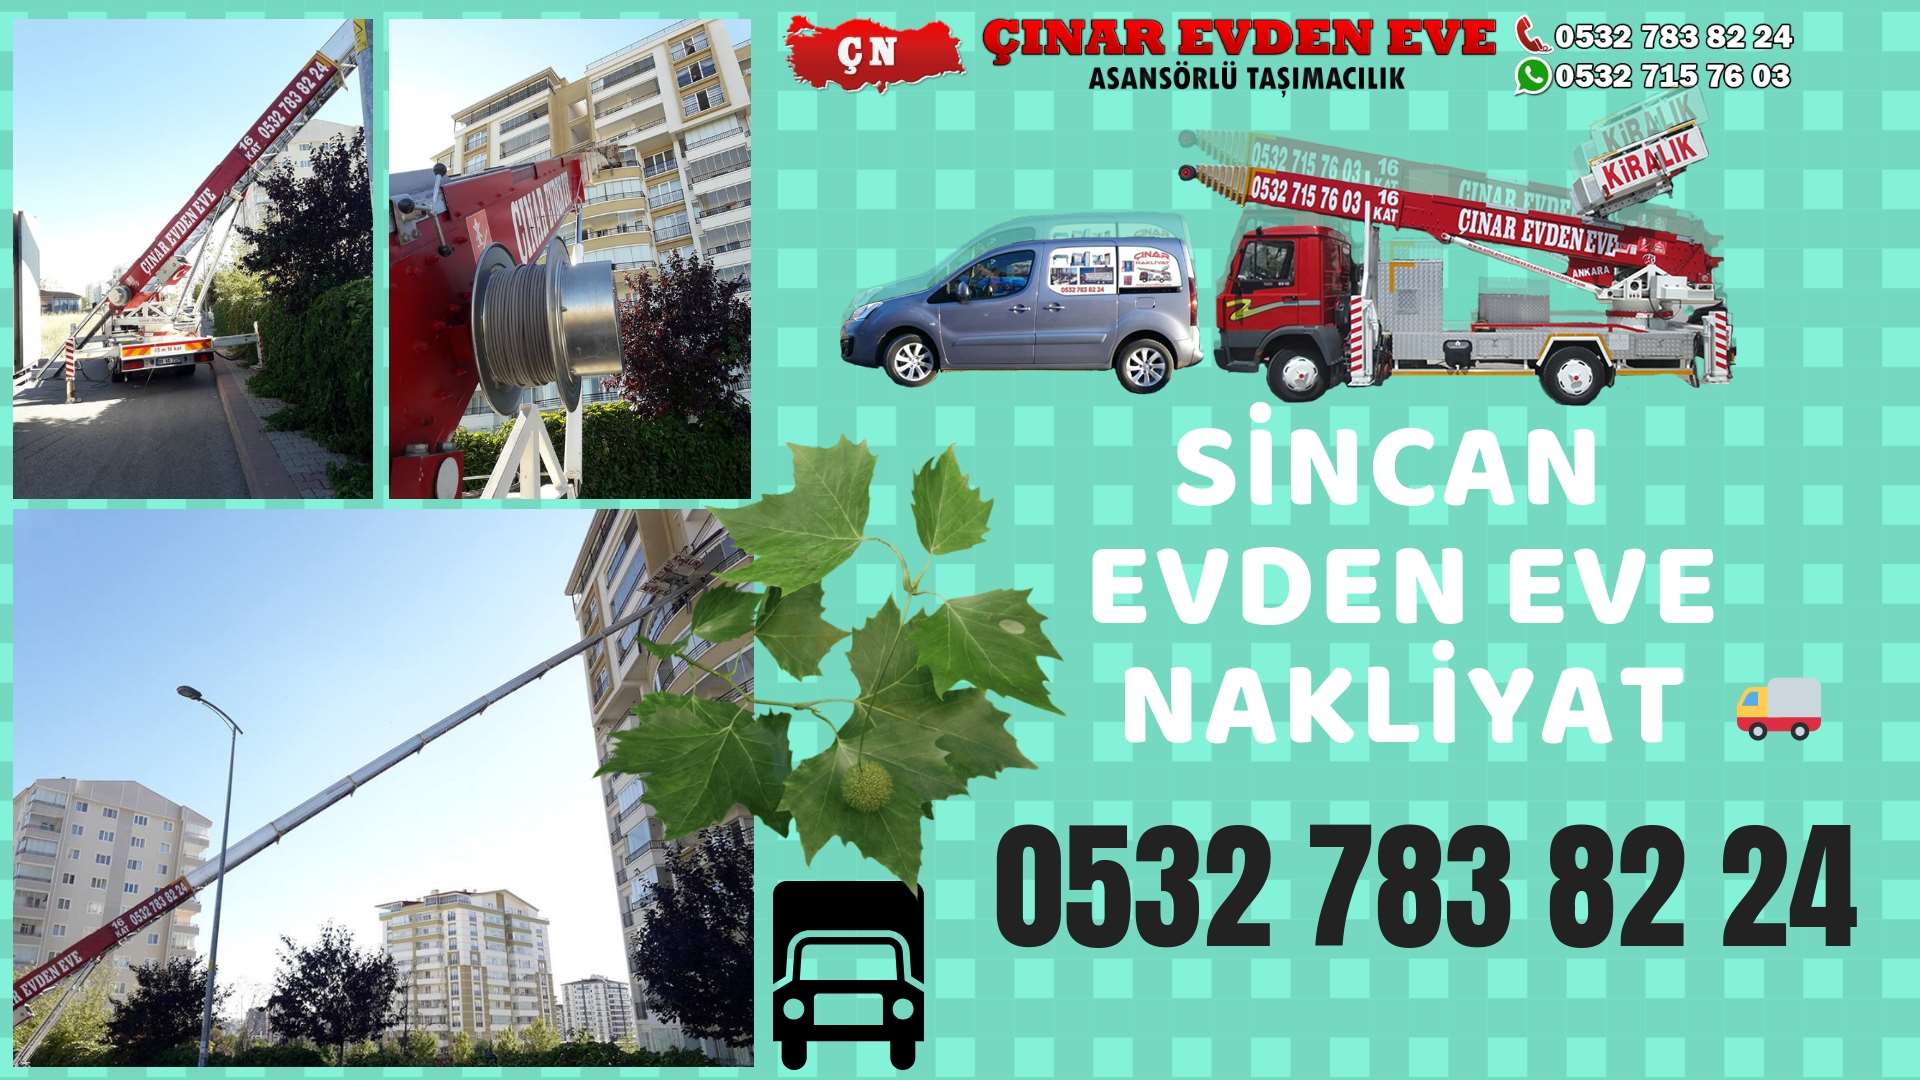 Ankara Sincan Fatih sincan ev eşya taşımacılığı, sincan evden eve 0532 715 76 03